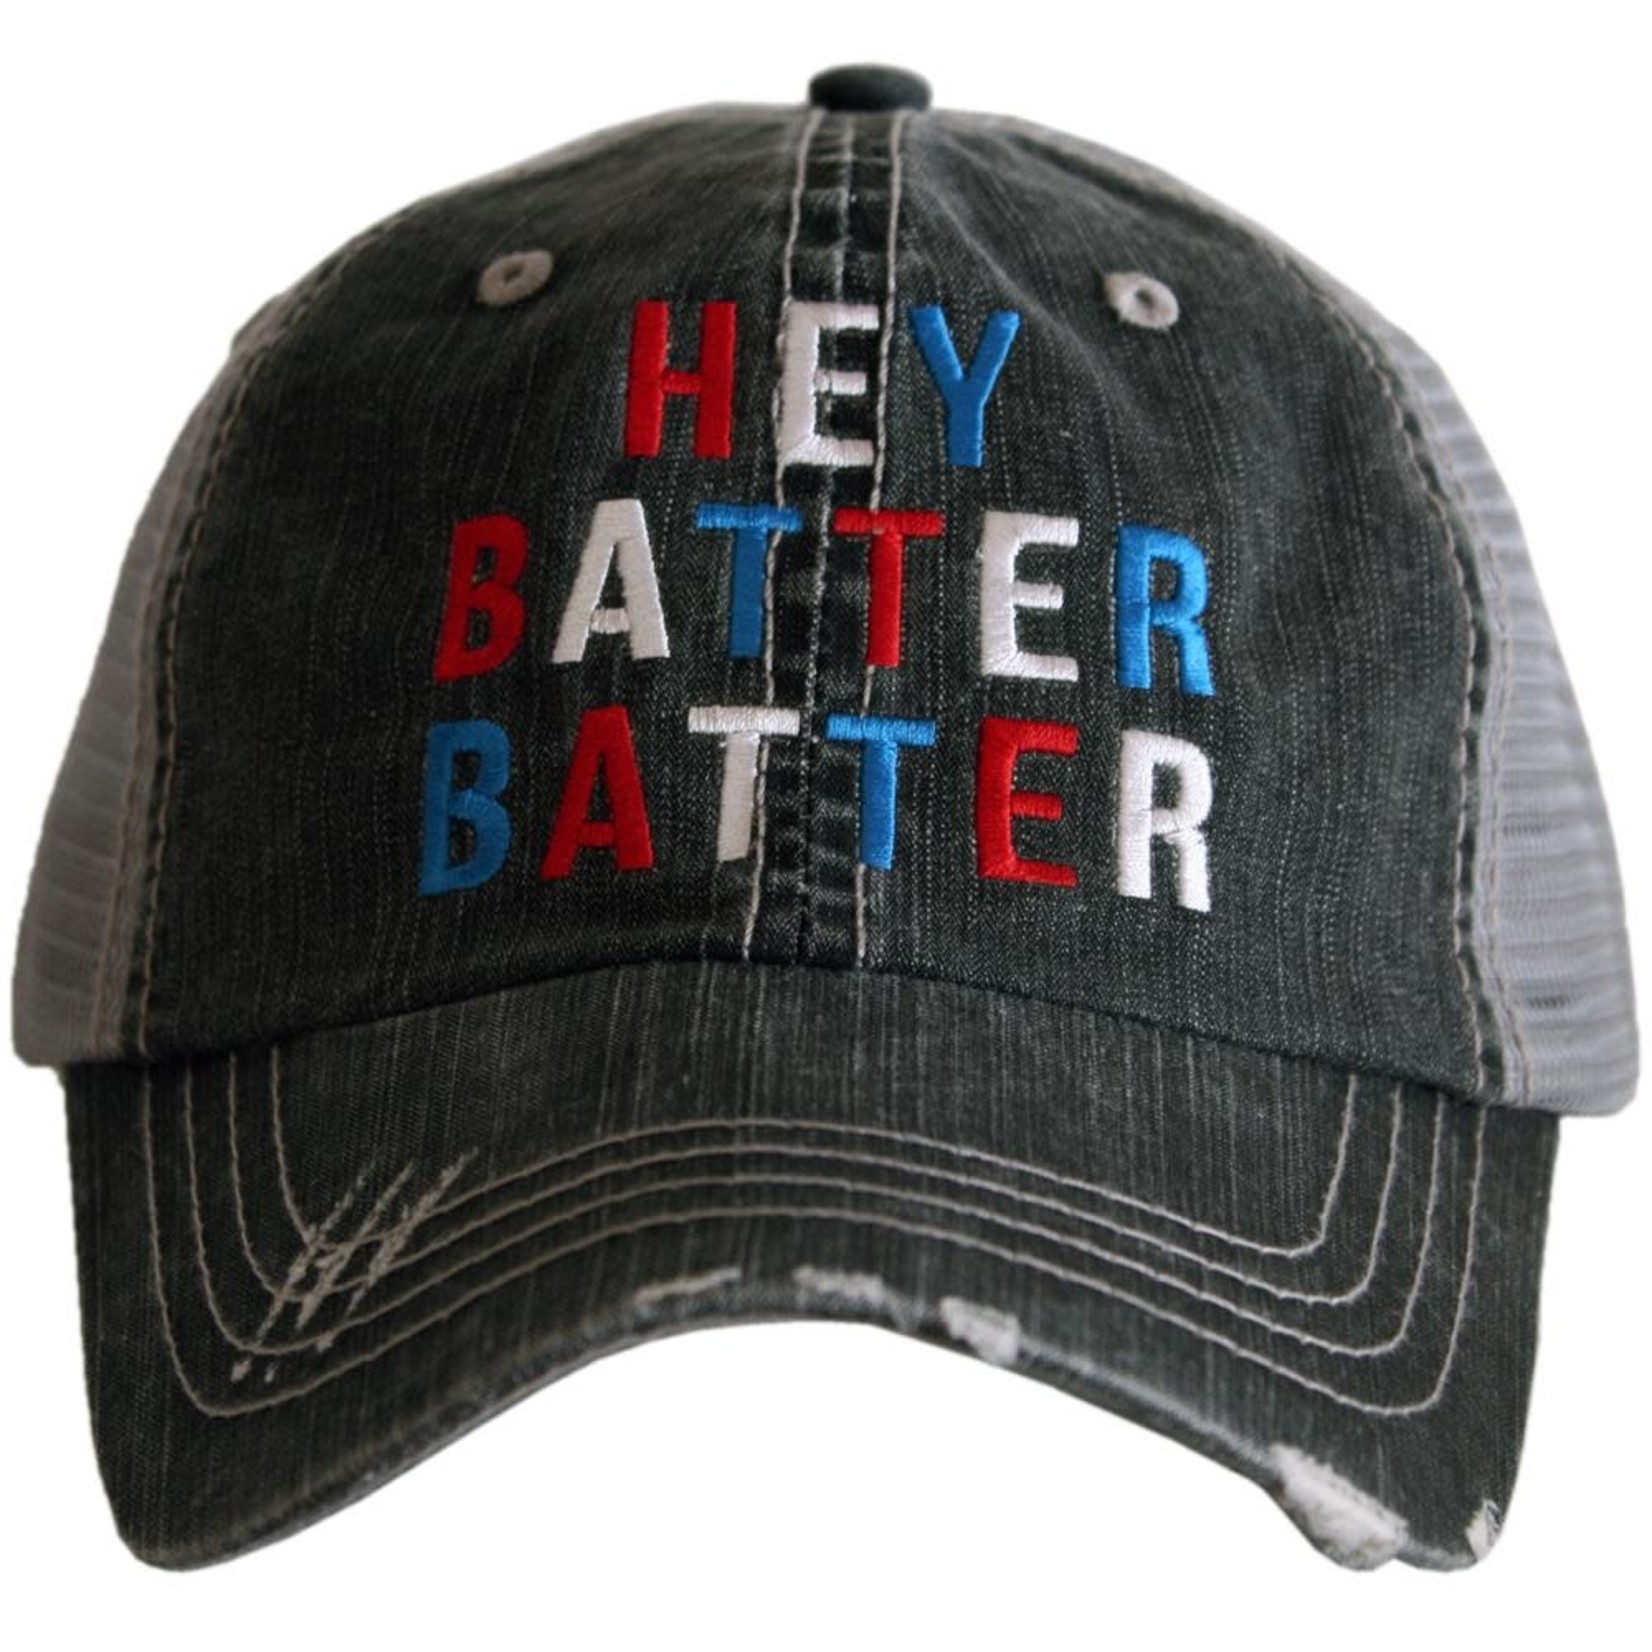 Katydid Hey Batter Batter Trucker Hat